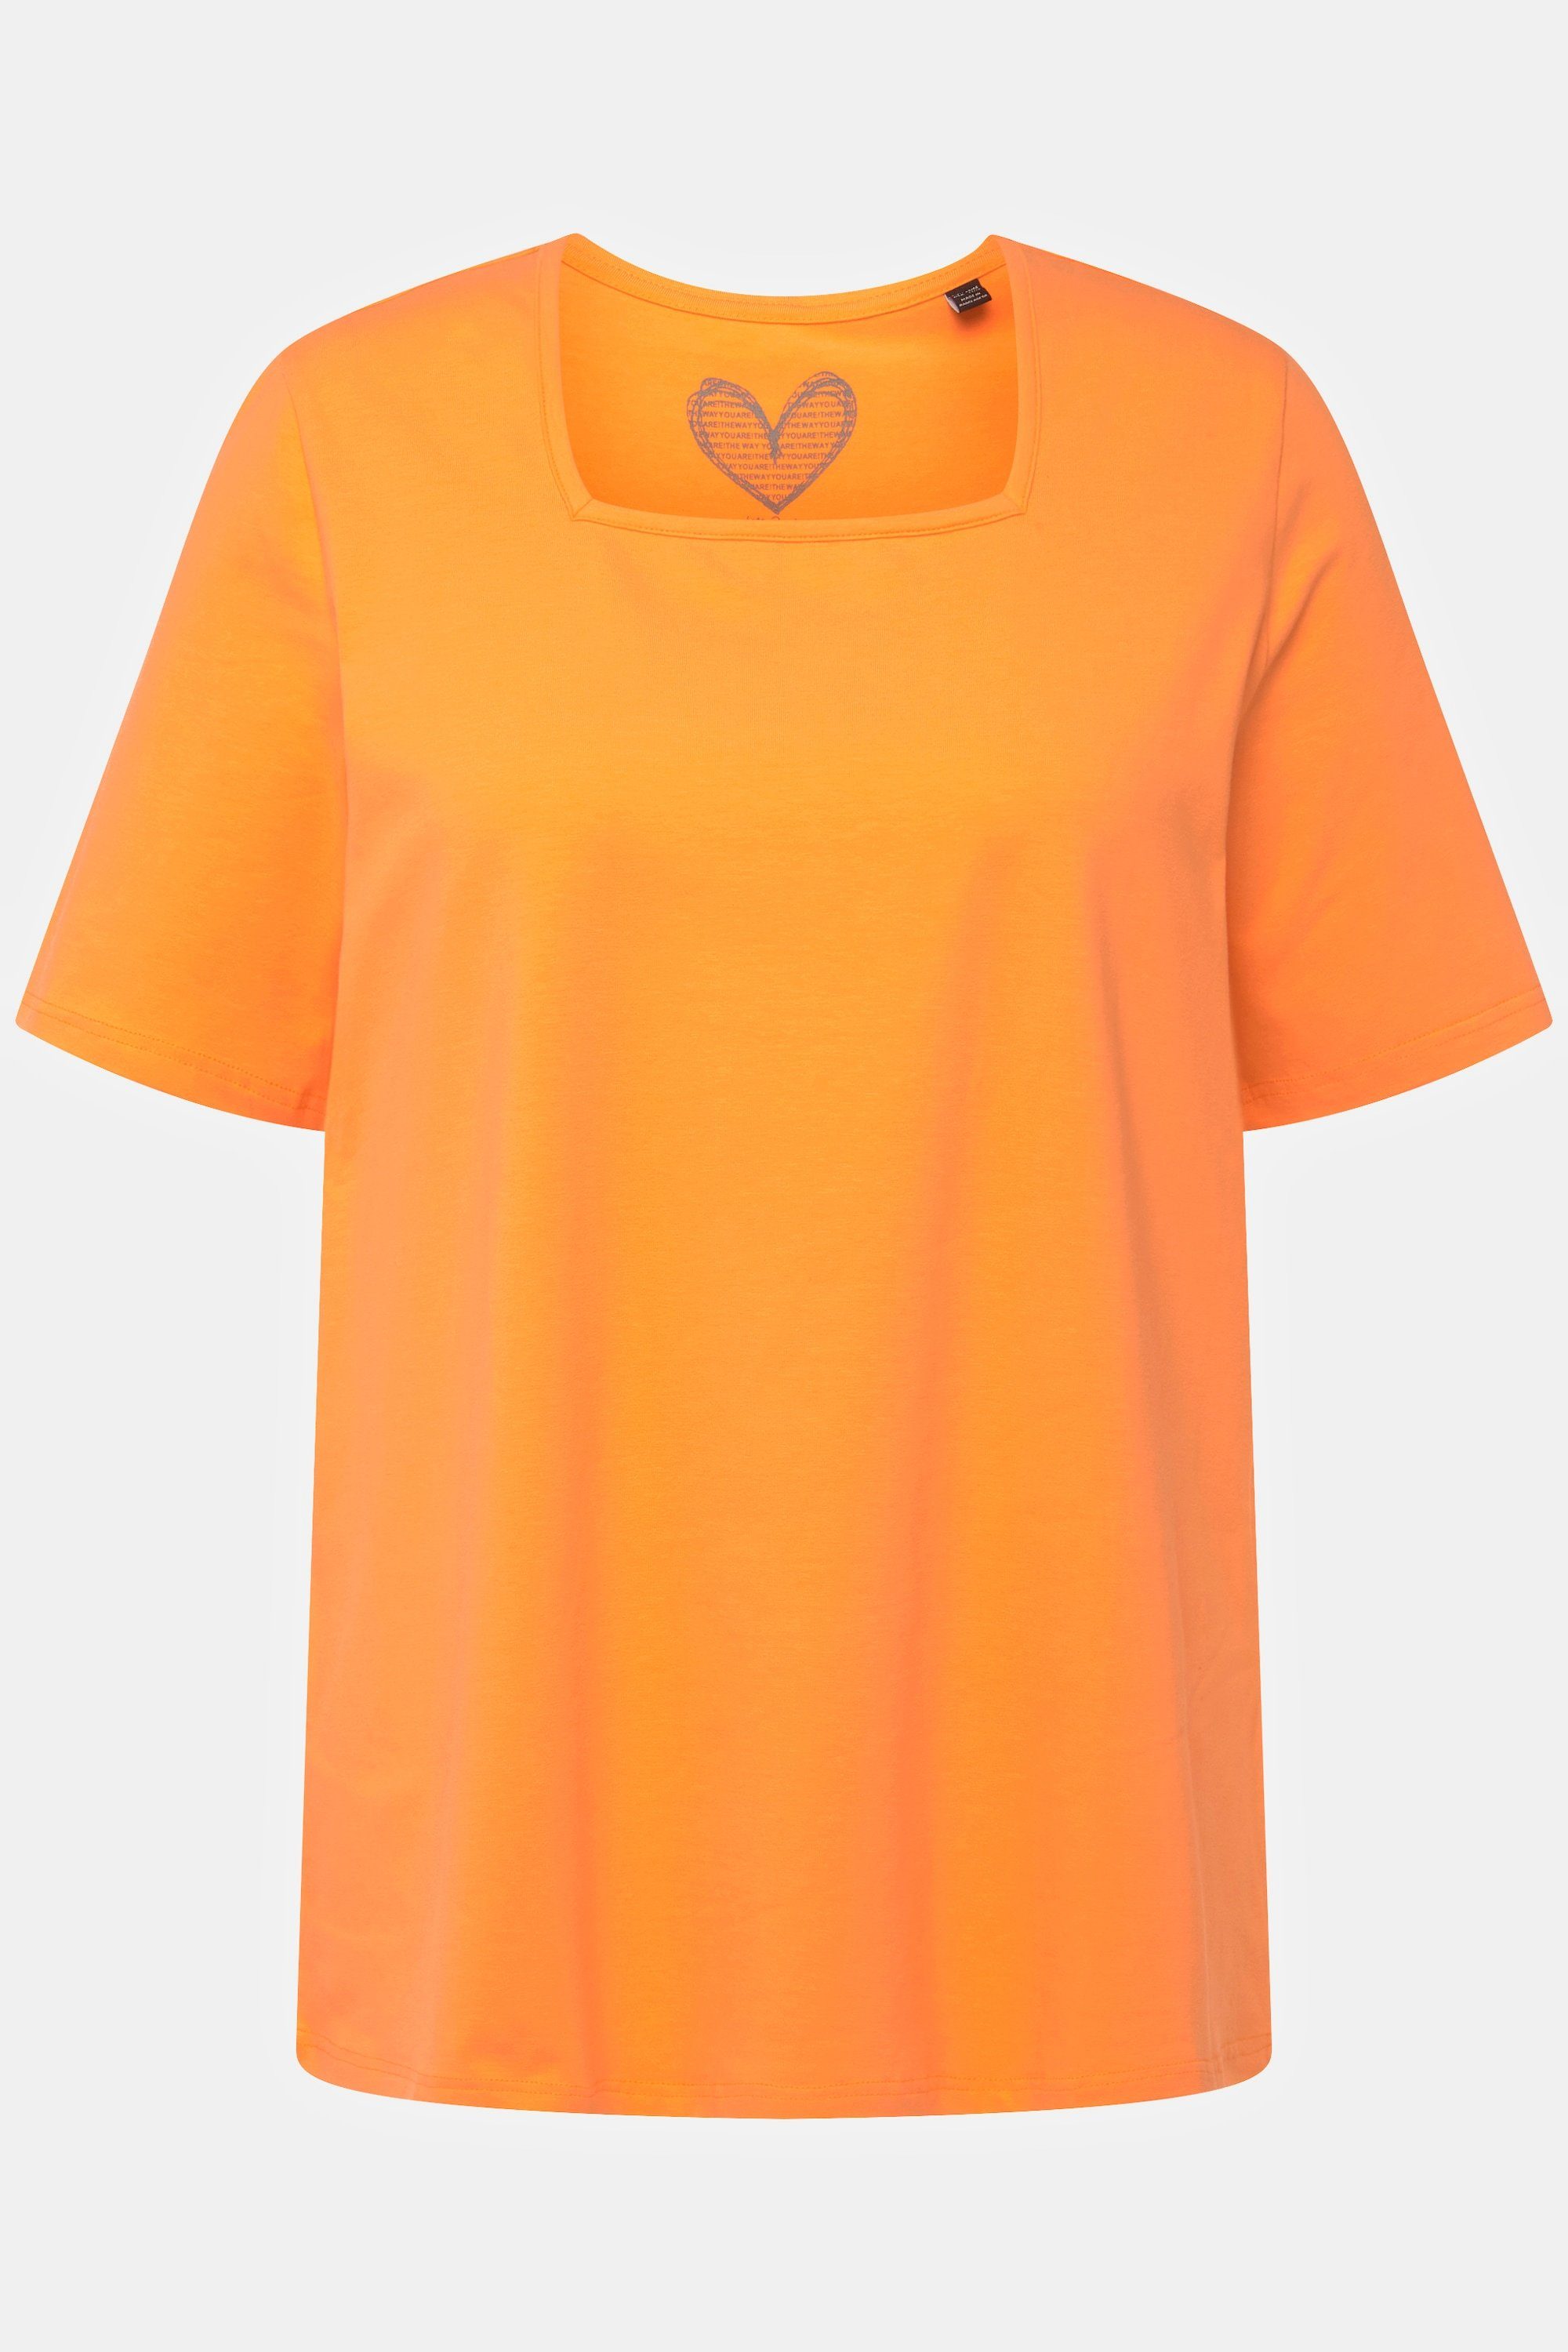 Halbarm Carree-Ausschnitt T-Shirt Rundhalsshirt Ulla orange cantaloupe Popken A-Linie